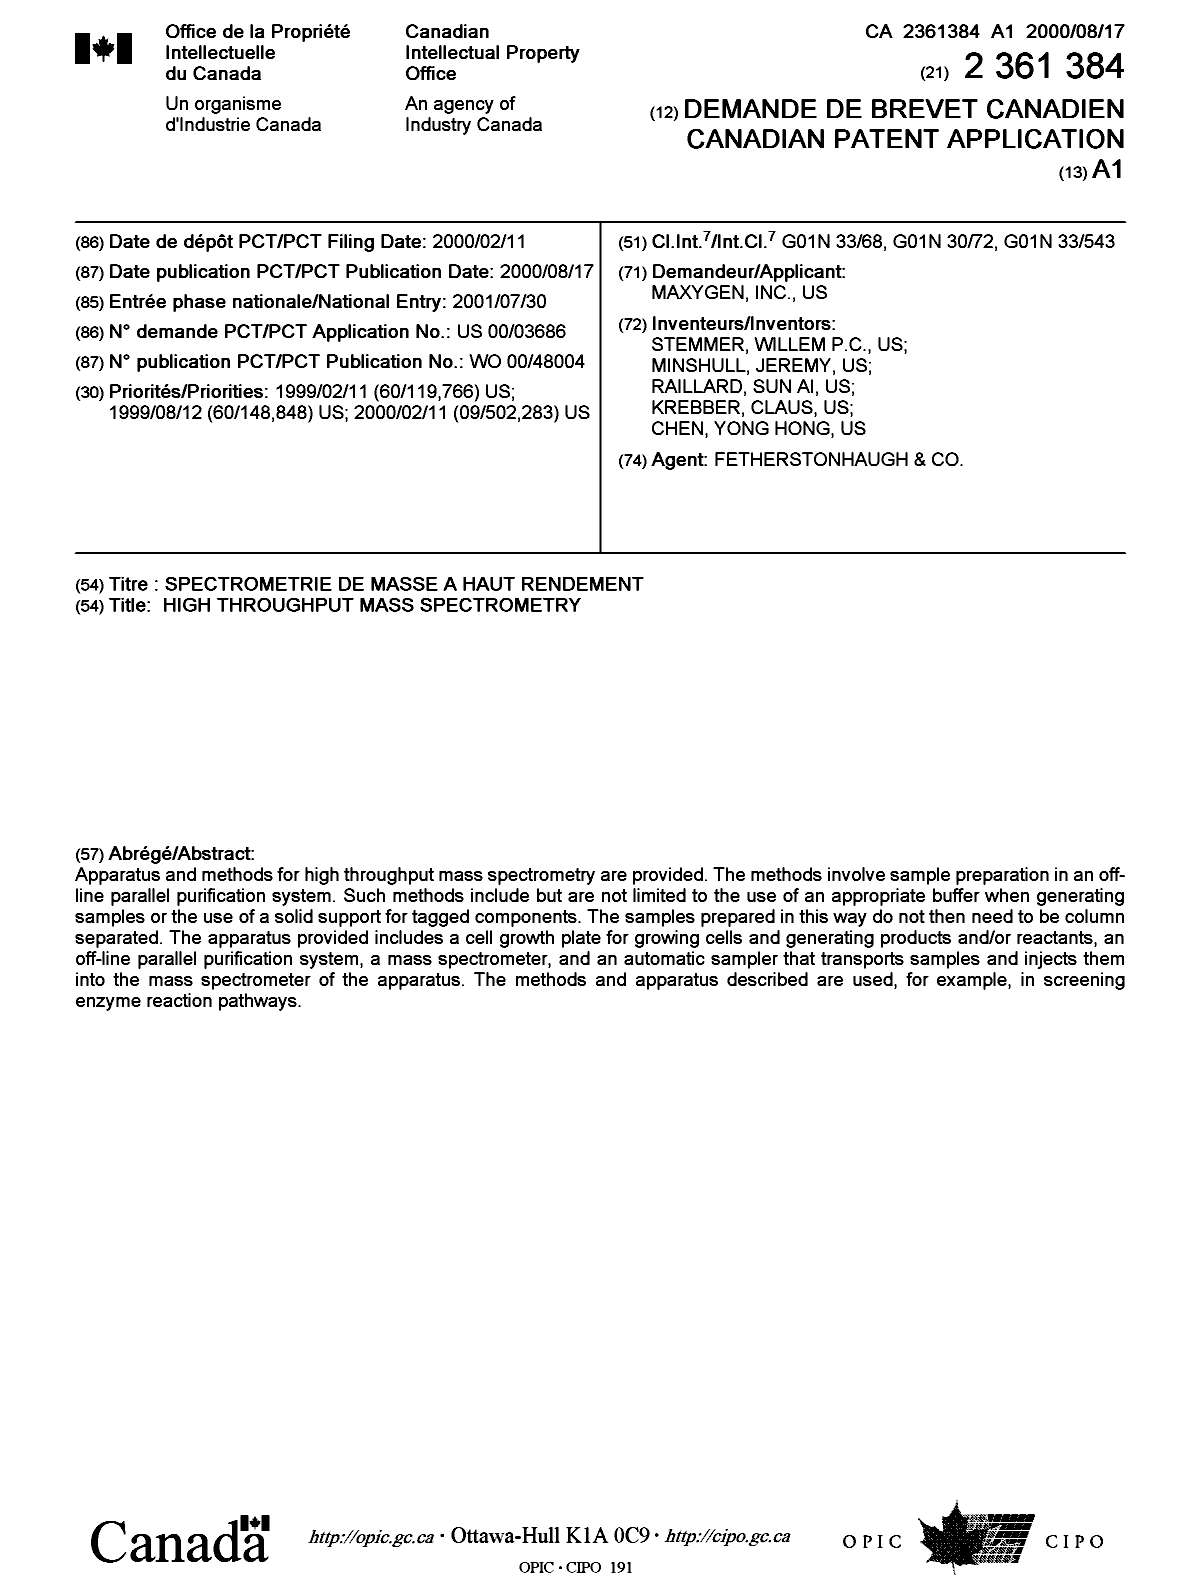 Document de brevet canadien 2361384. Page couverture 20011213. Image 1 de 1